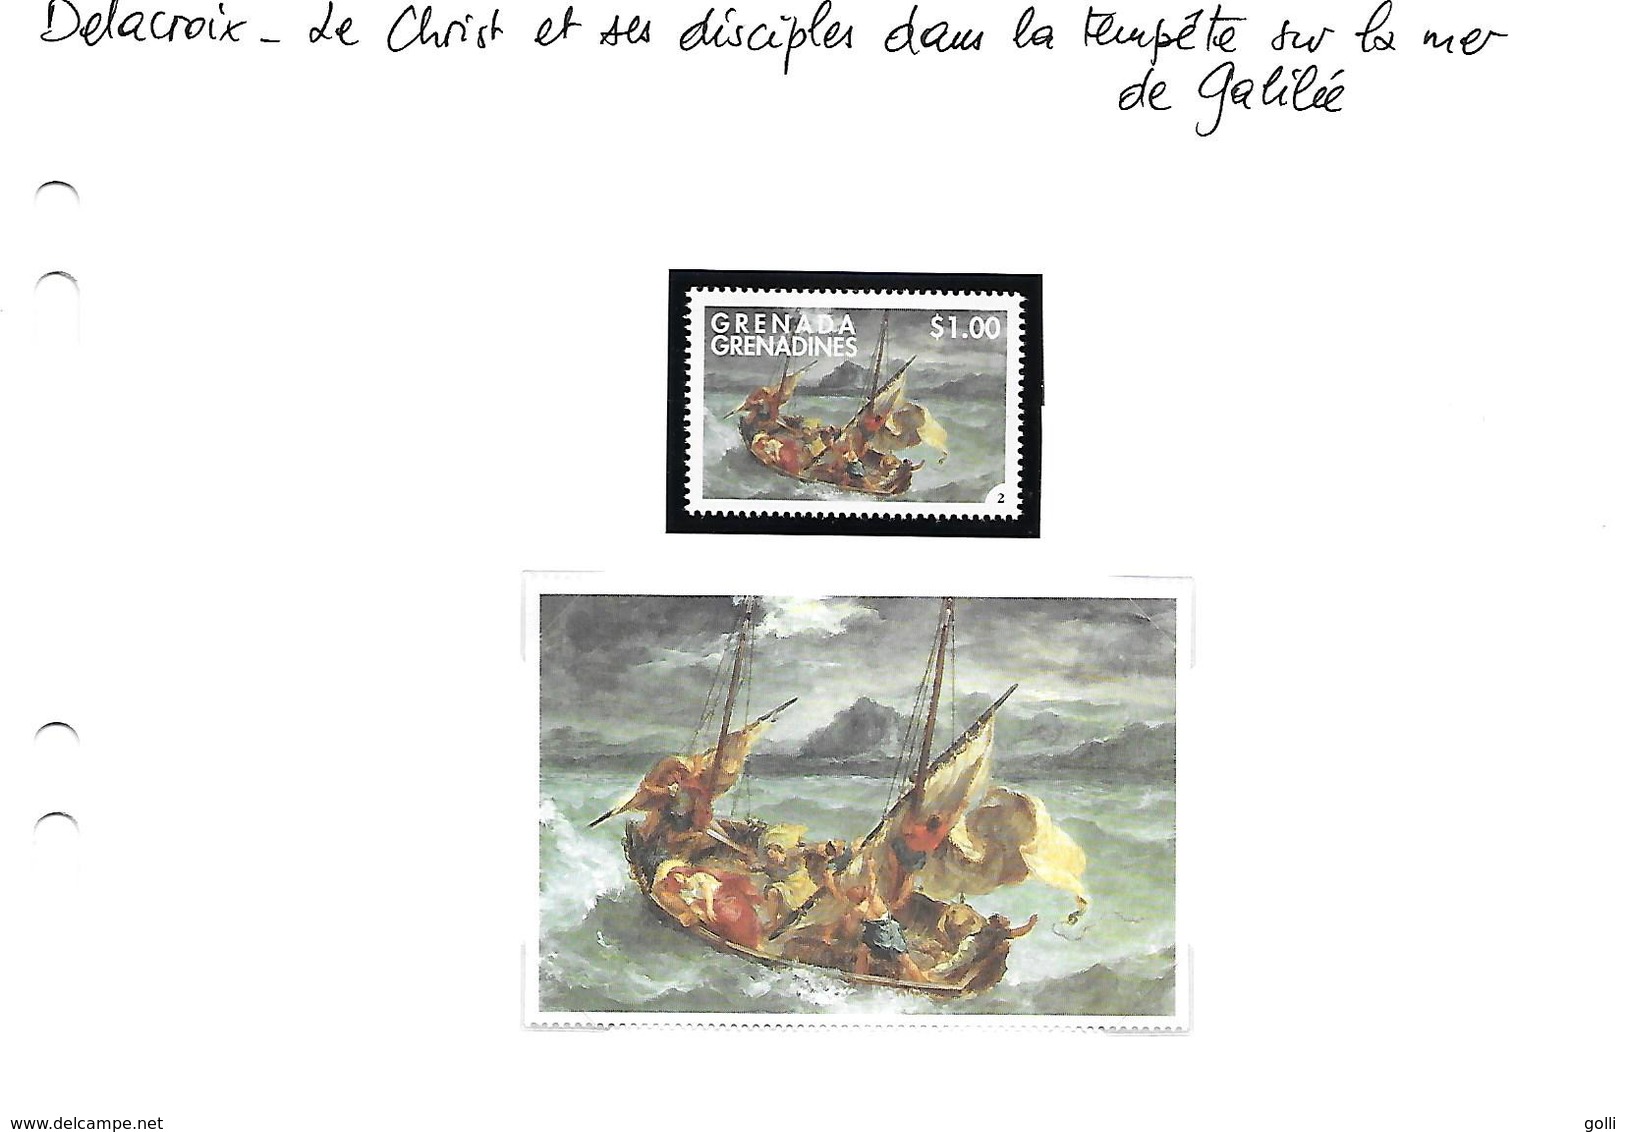 Delacroix - 12 tableaux avec leur vignette